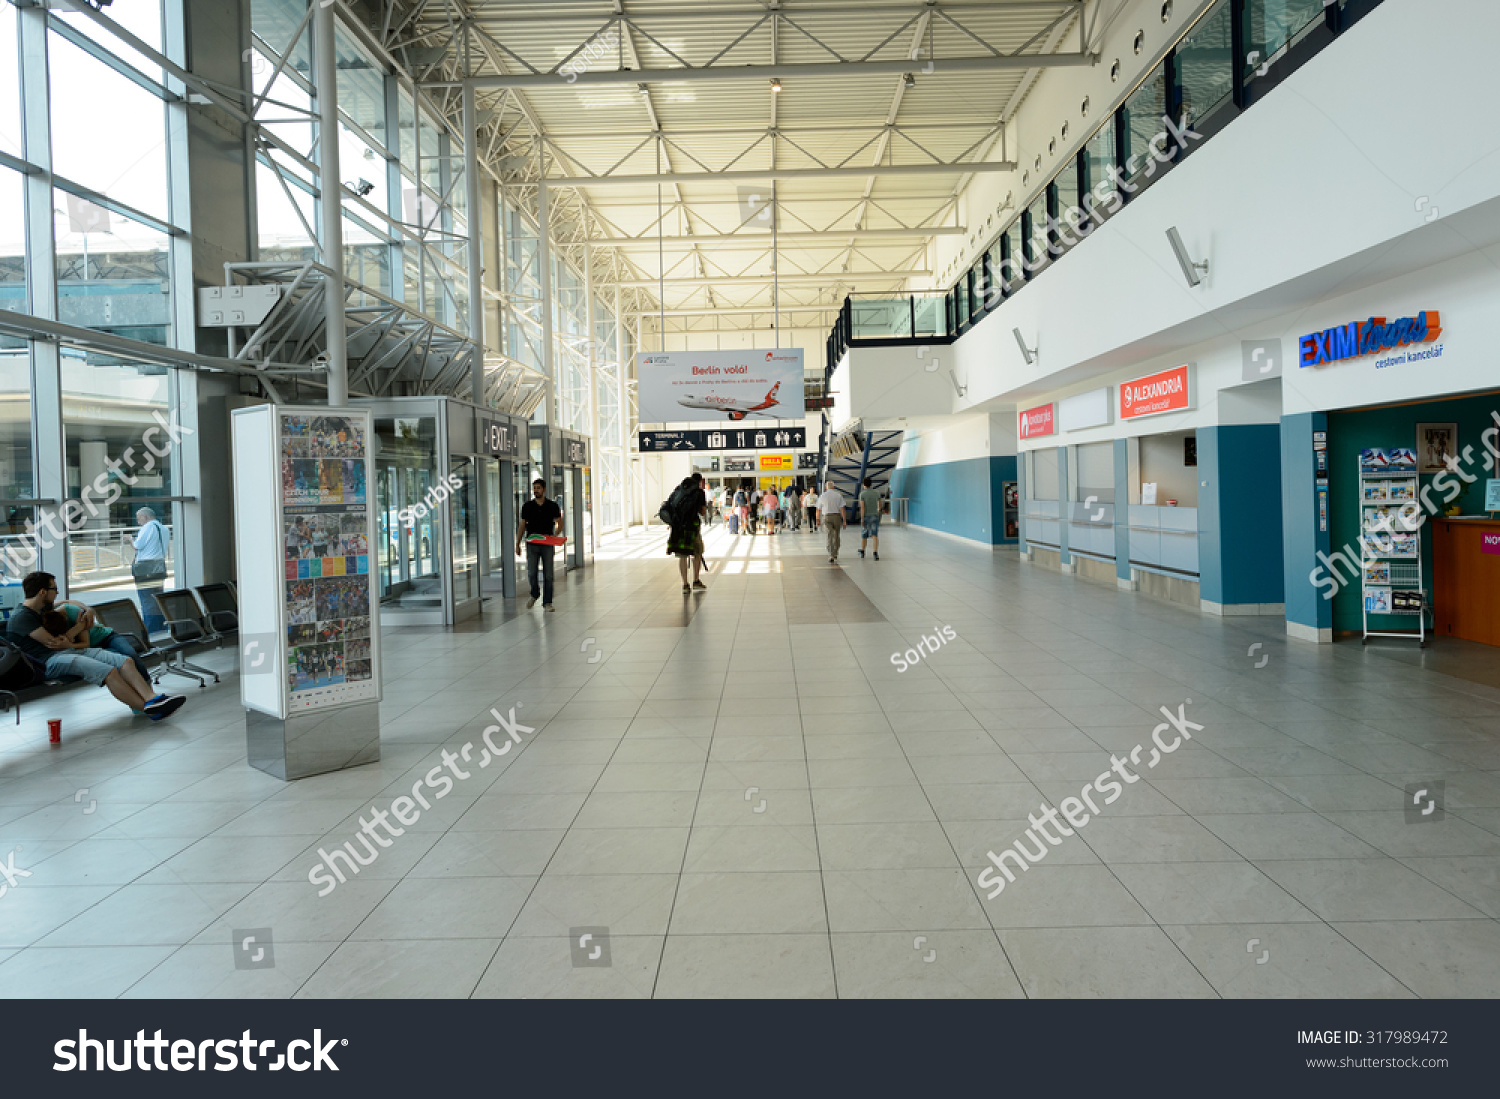 PRAGUE, CZECH REPUBLIC - AUGUST 04, 2015: airport of Prague interior. International airport of Prague is major airport of Czech Republic #317989472